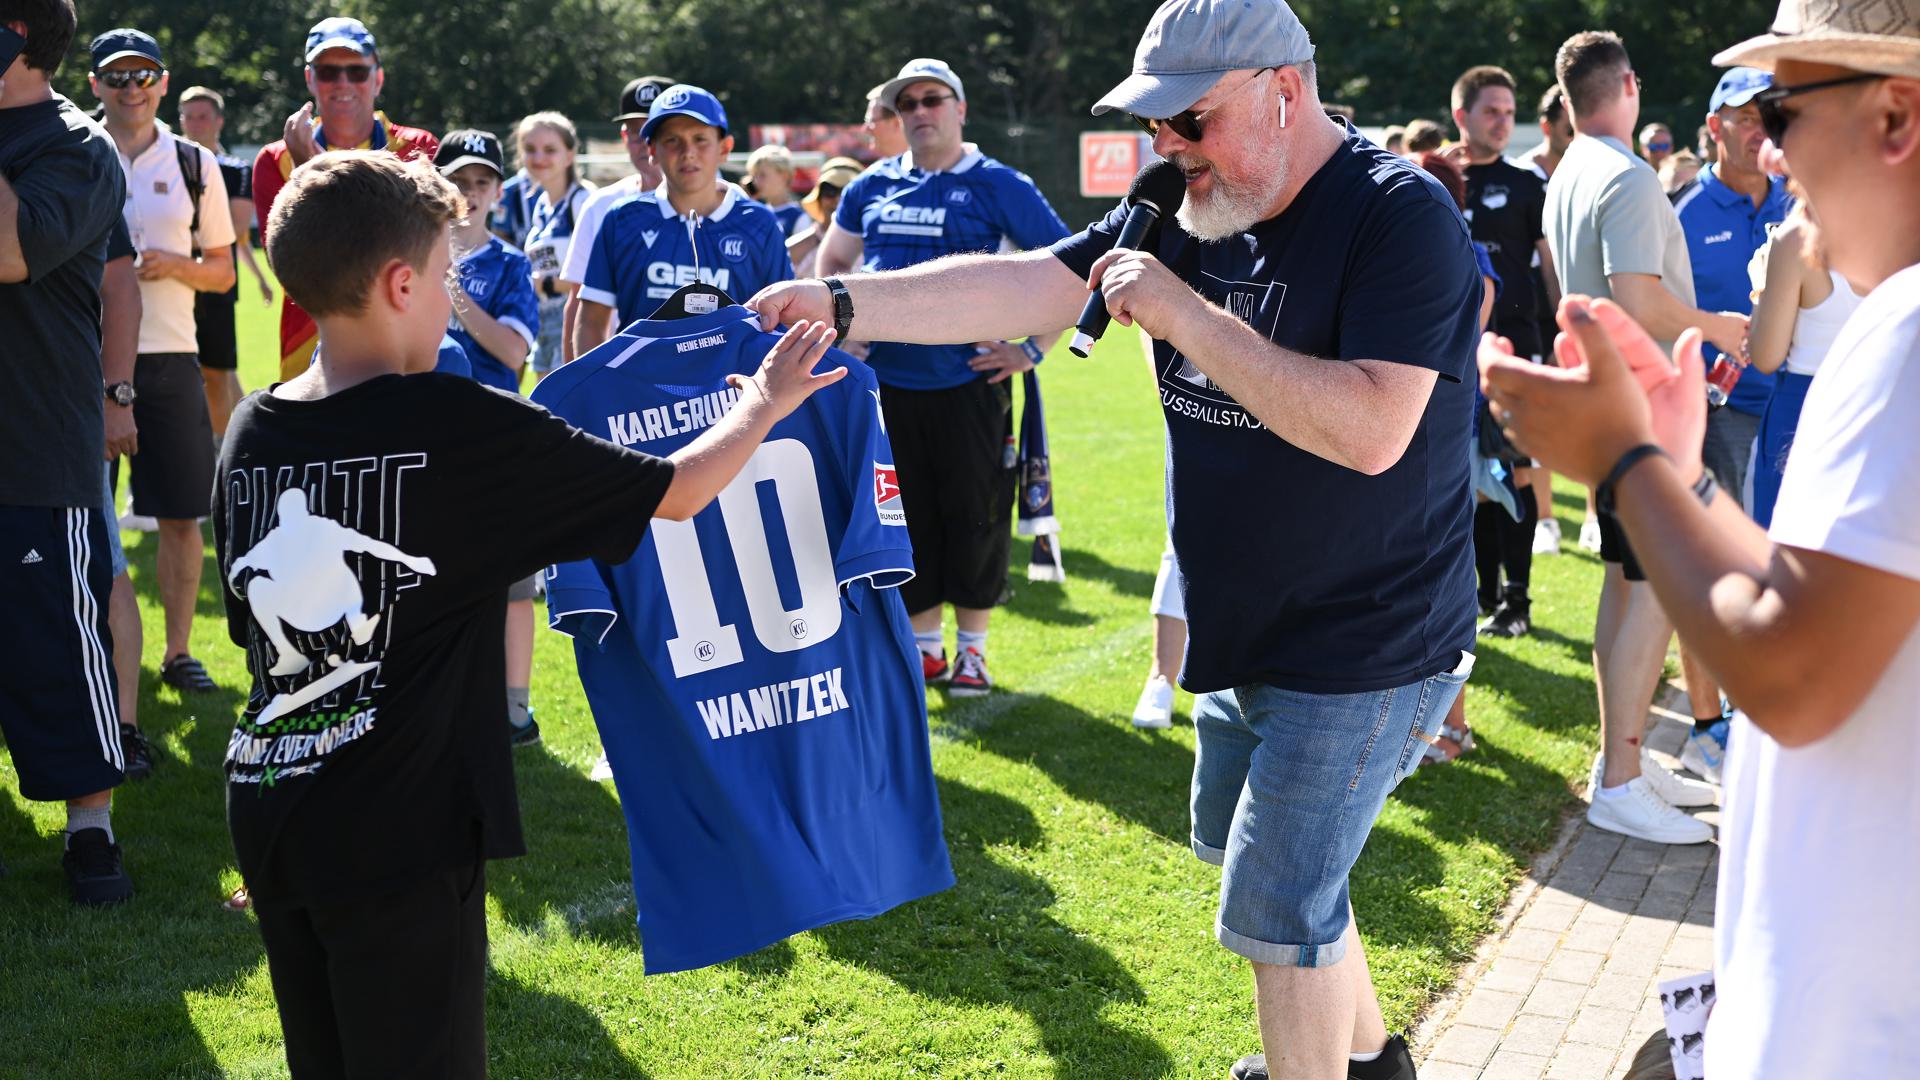 KSC-Stadionsprecher Martin Wacker übergibt einem Fan das Trikot von Marvin Wanitzek.